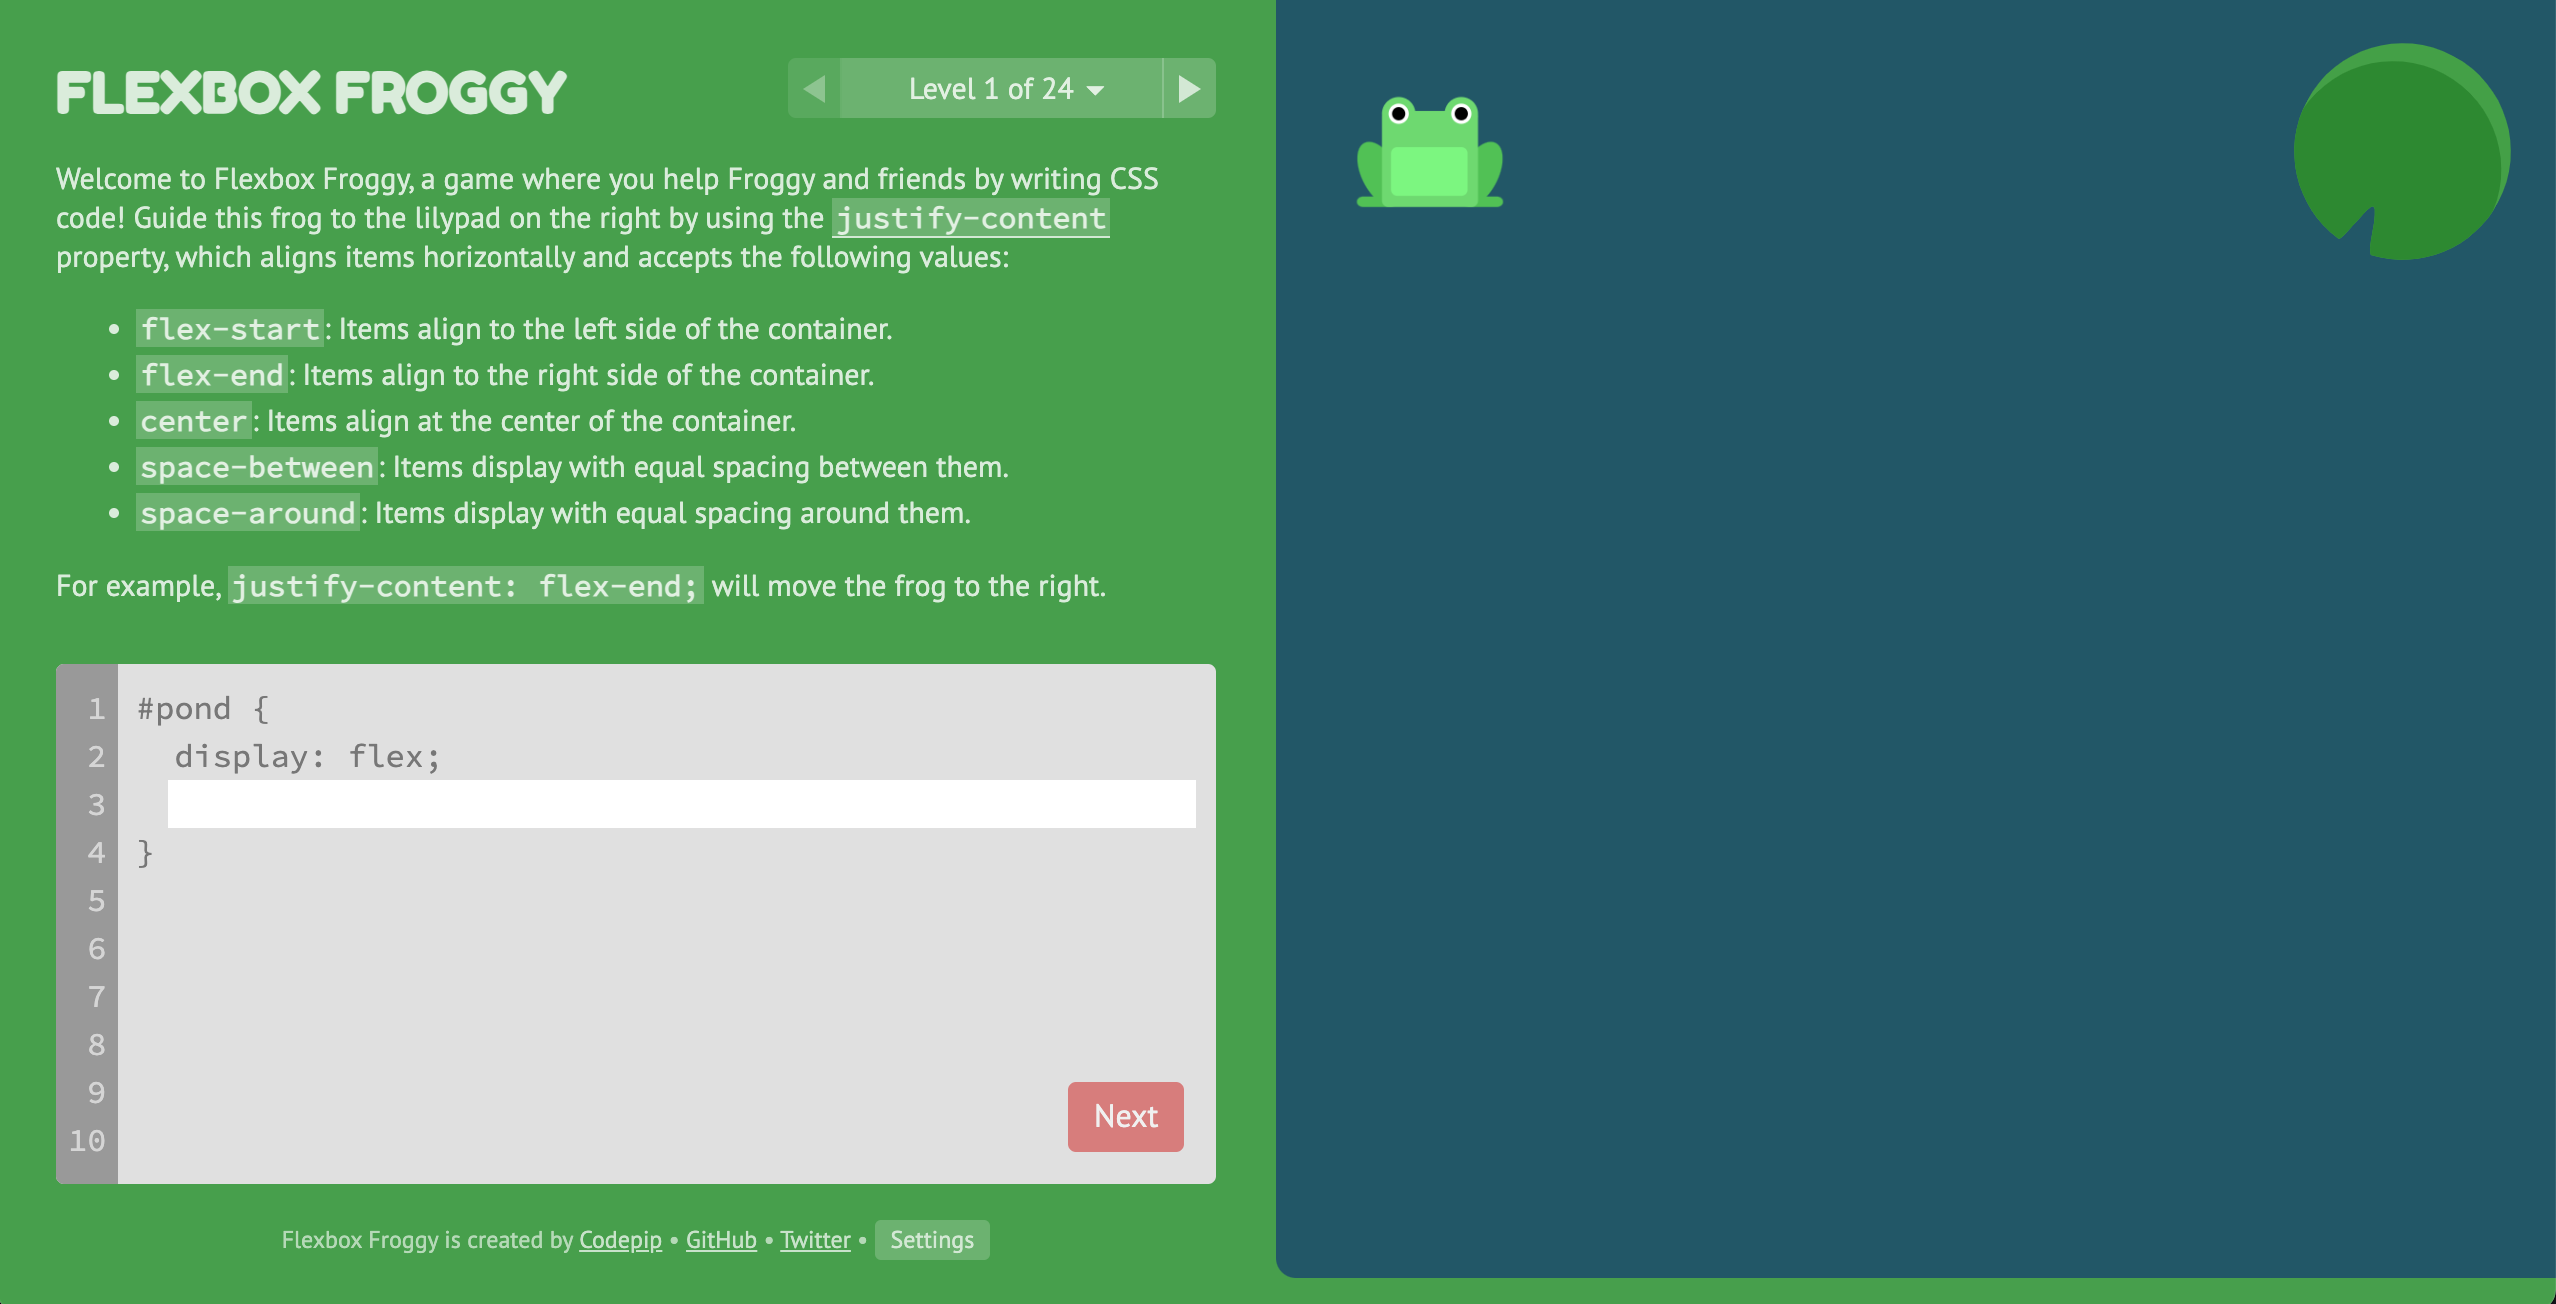 Imagem da tela inicial do site da Flexbox Froggy